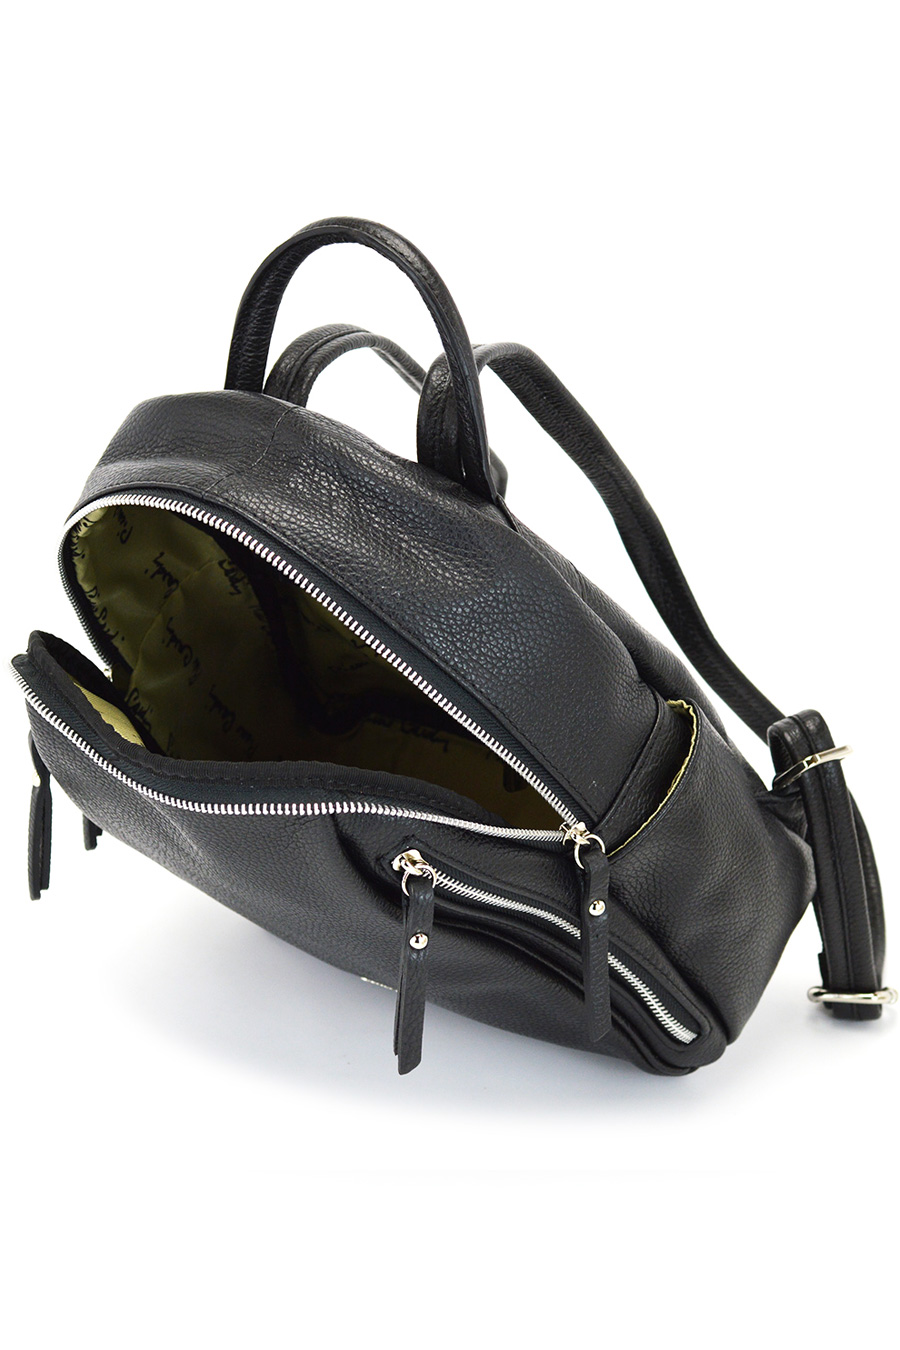 Backpack PIERRE CARDIN 1858-FRZ-DOLLARO-NERO